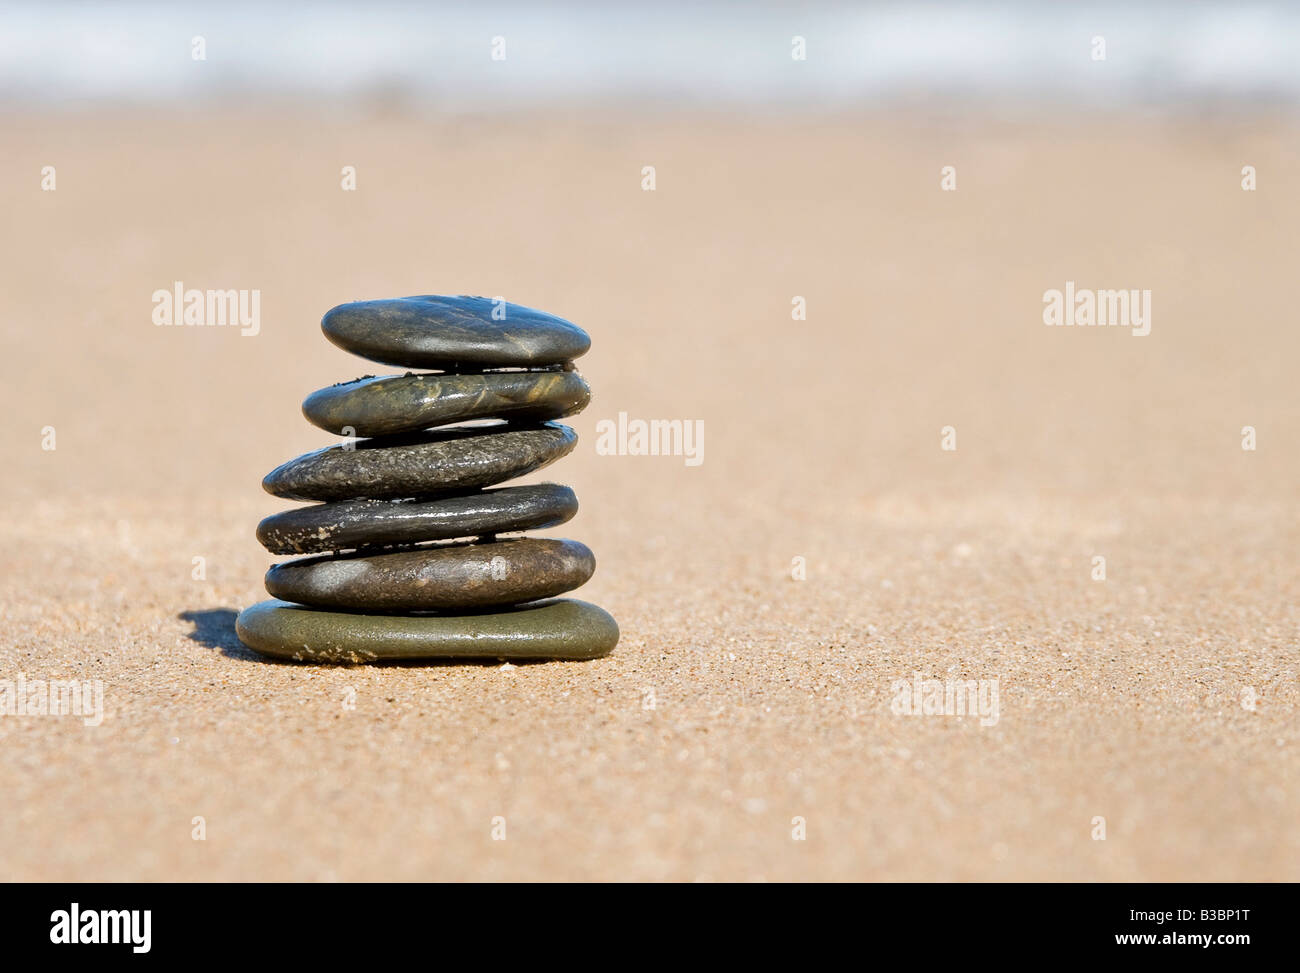 Equilibrio de bonitas piedras que representan la estabilidad y el equilibrio Foto de stock